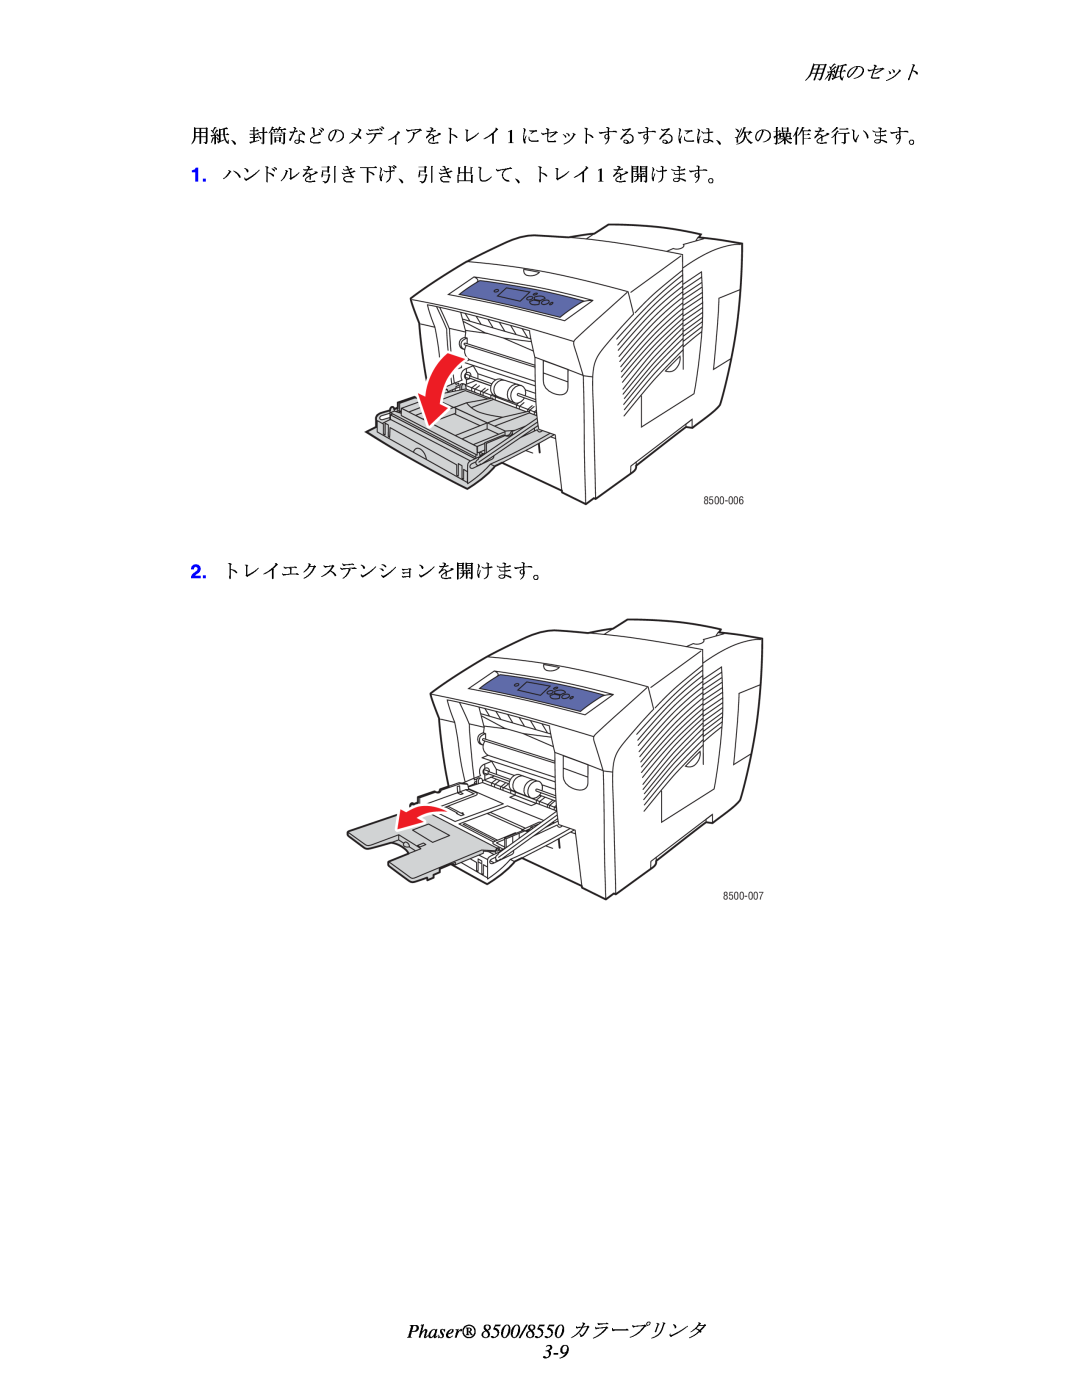 Xerox manual 用紙のセ ッ ト, 1.ハン ドルを引き下げ、 引き出して、 ト レ イ 1 を開けます。, 2.ト レ イエク ステンシ ョ ンを開けます。, Phaser 8500/8550 カ ラープ リ ン タ 3-9 